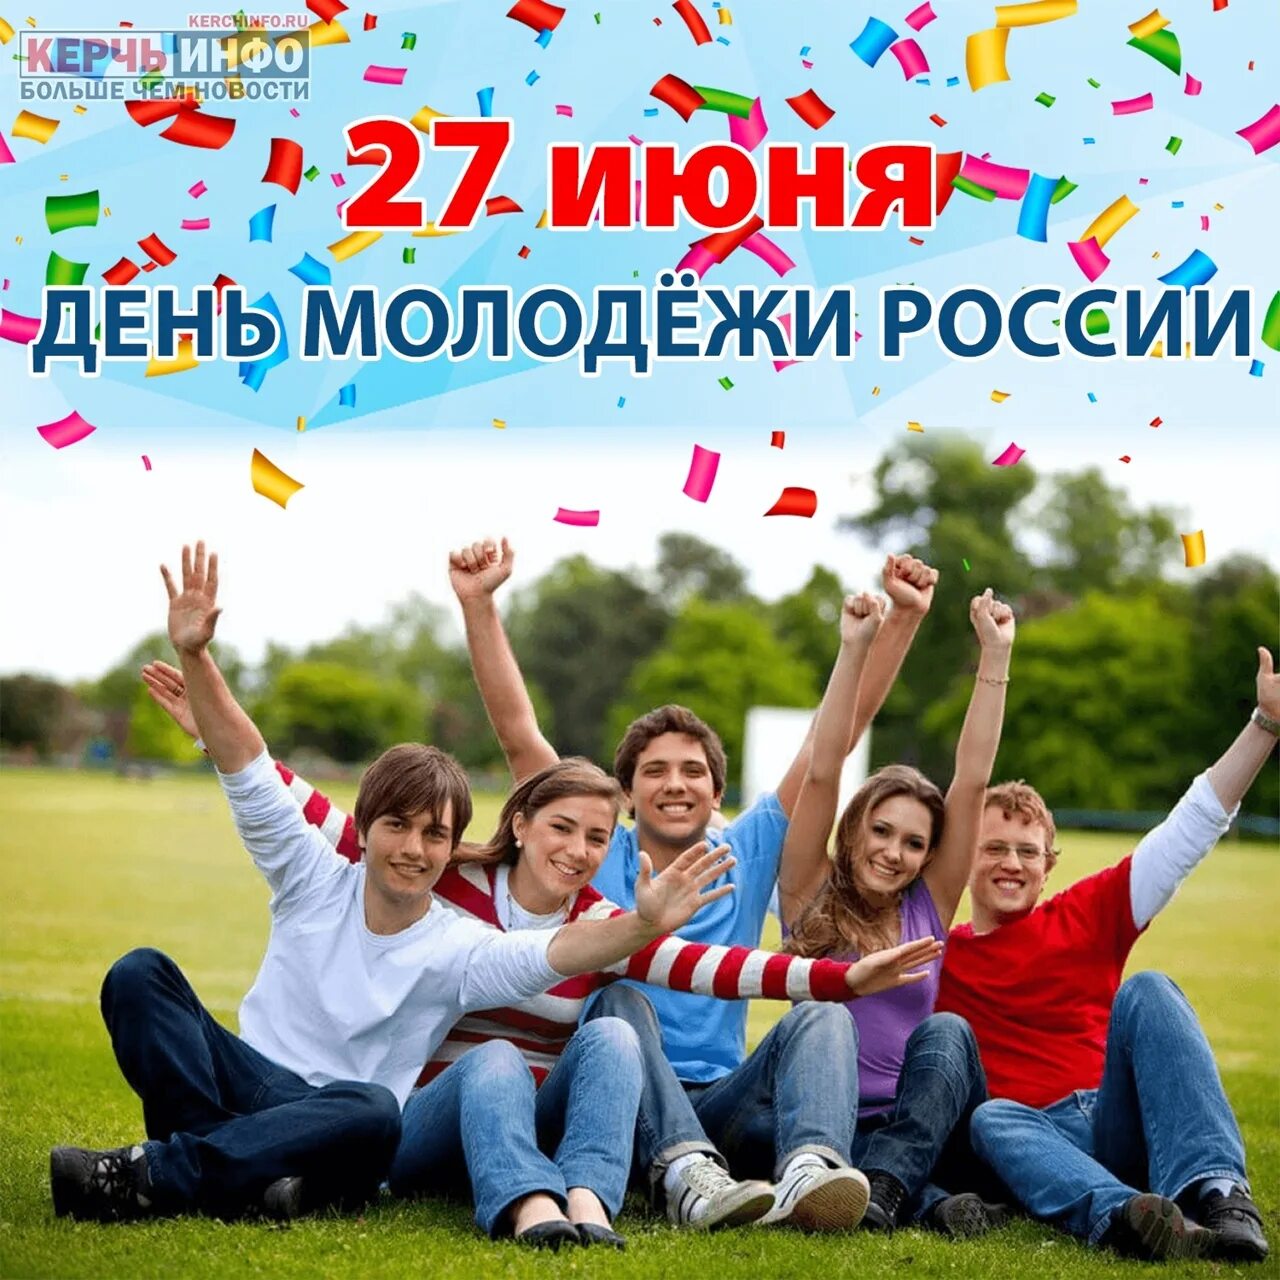 Посвященному дню молодежи. С днем молодежи. День молодёжи (Россия). С праздником молодежи. 27 Июня день молодежи России.